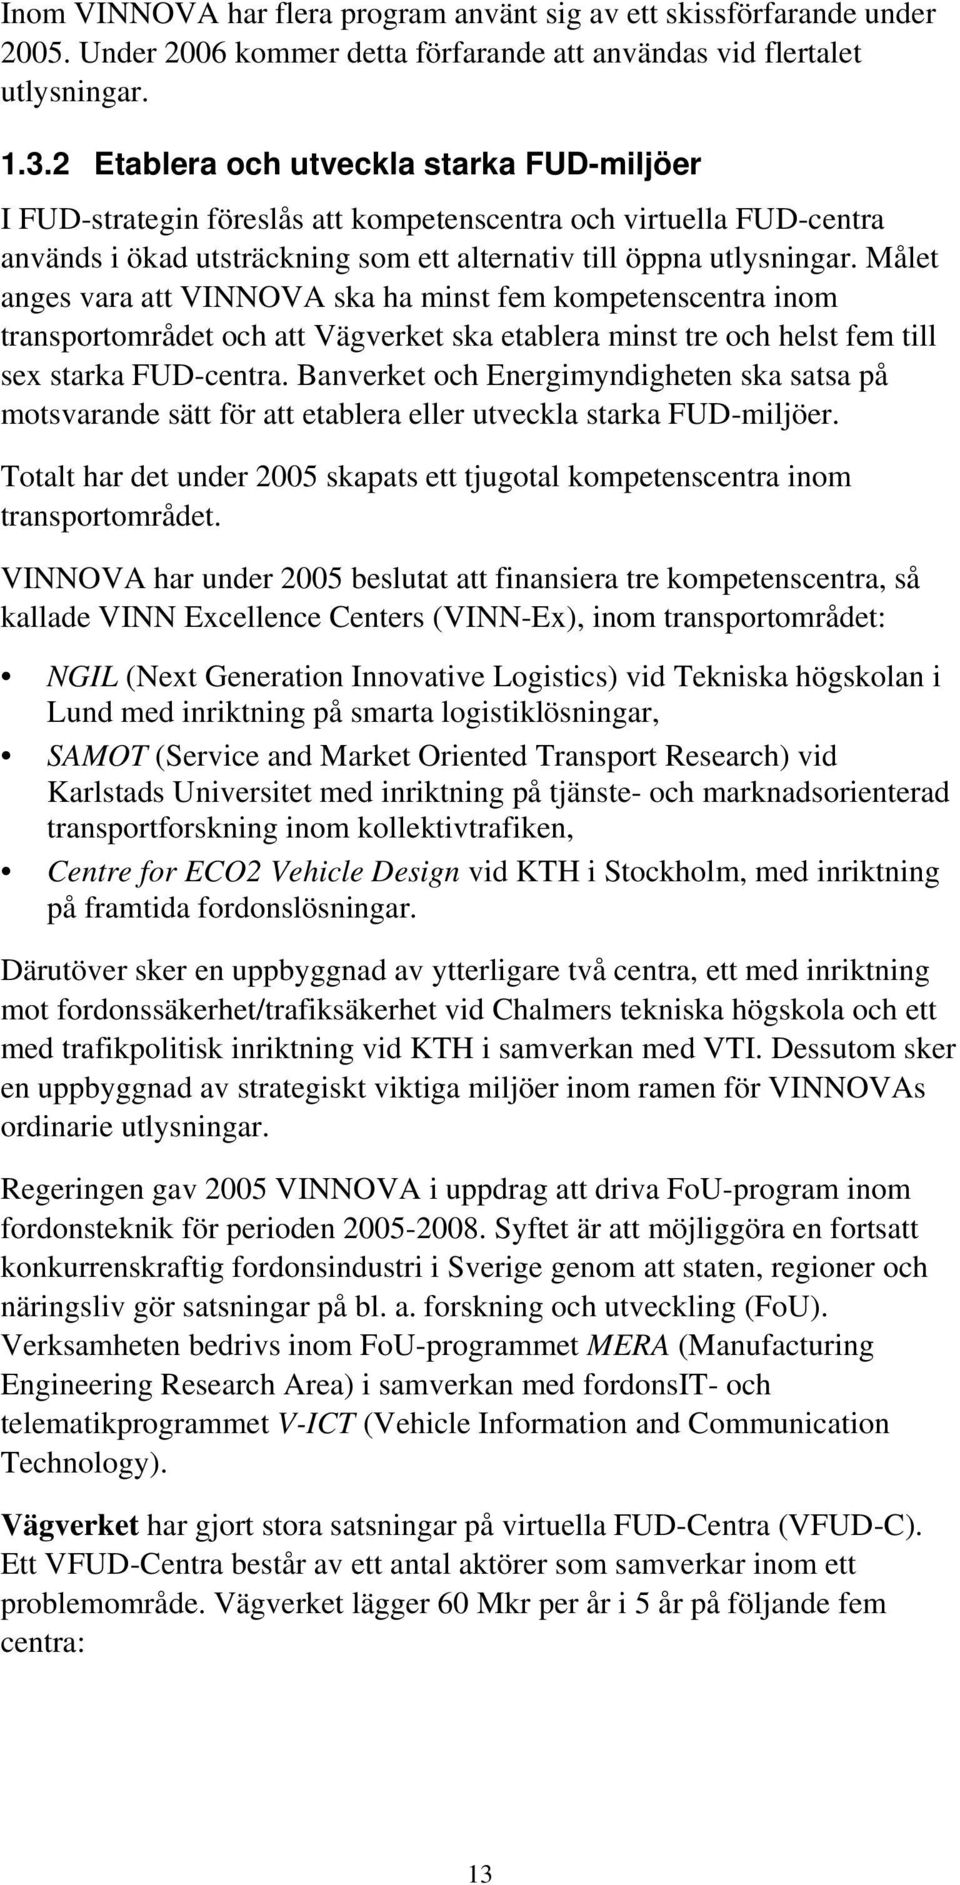 Målet anges vara att VINNOVA ska ha minst fem kompetenscentra inom transportområdet och att Vägverket ska etablera minst tre och helst fem till sex starka FUD-centra.